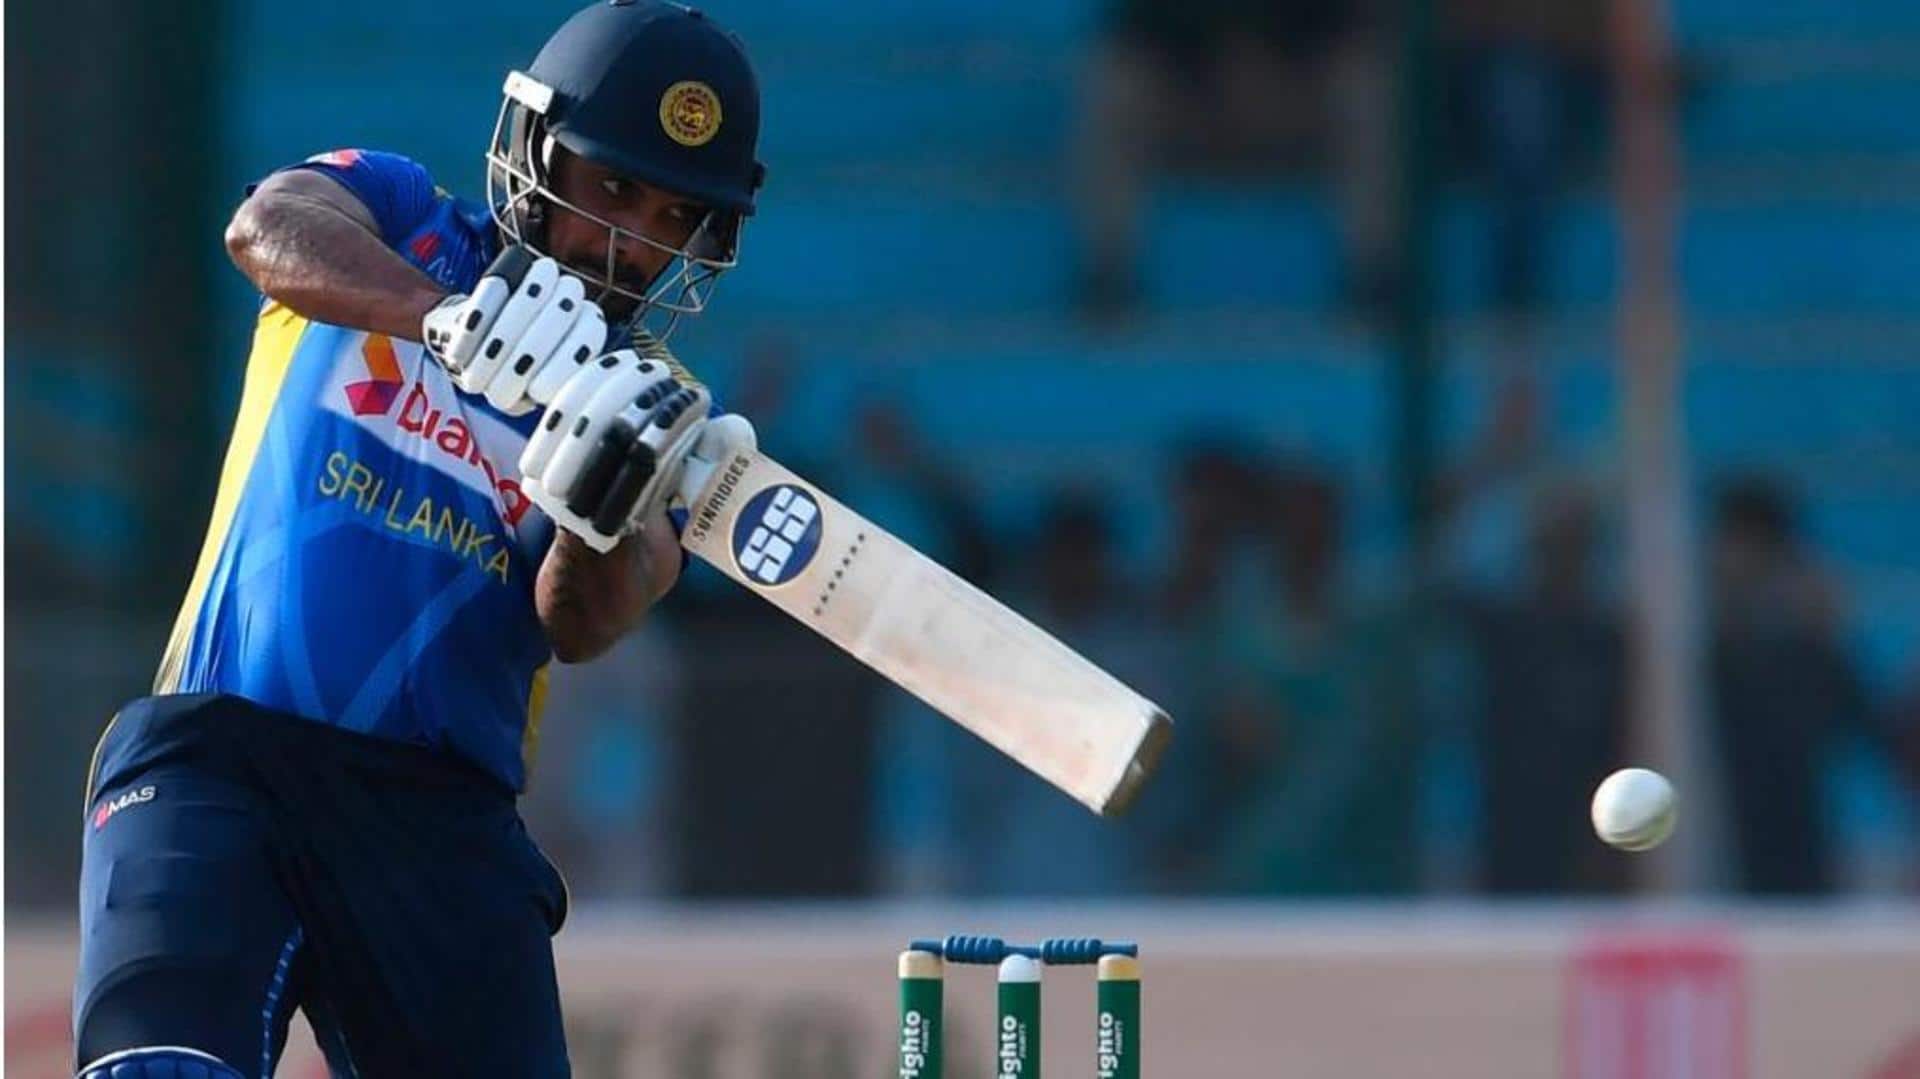 Sydney: Sri Lanka cricketer Danushka Gunathilaka arrested for sexual assault